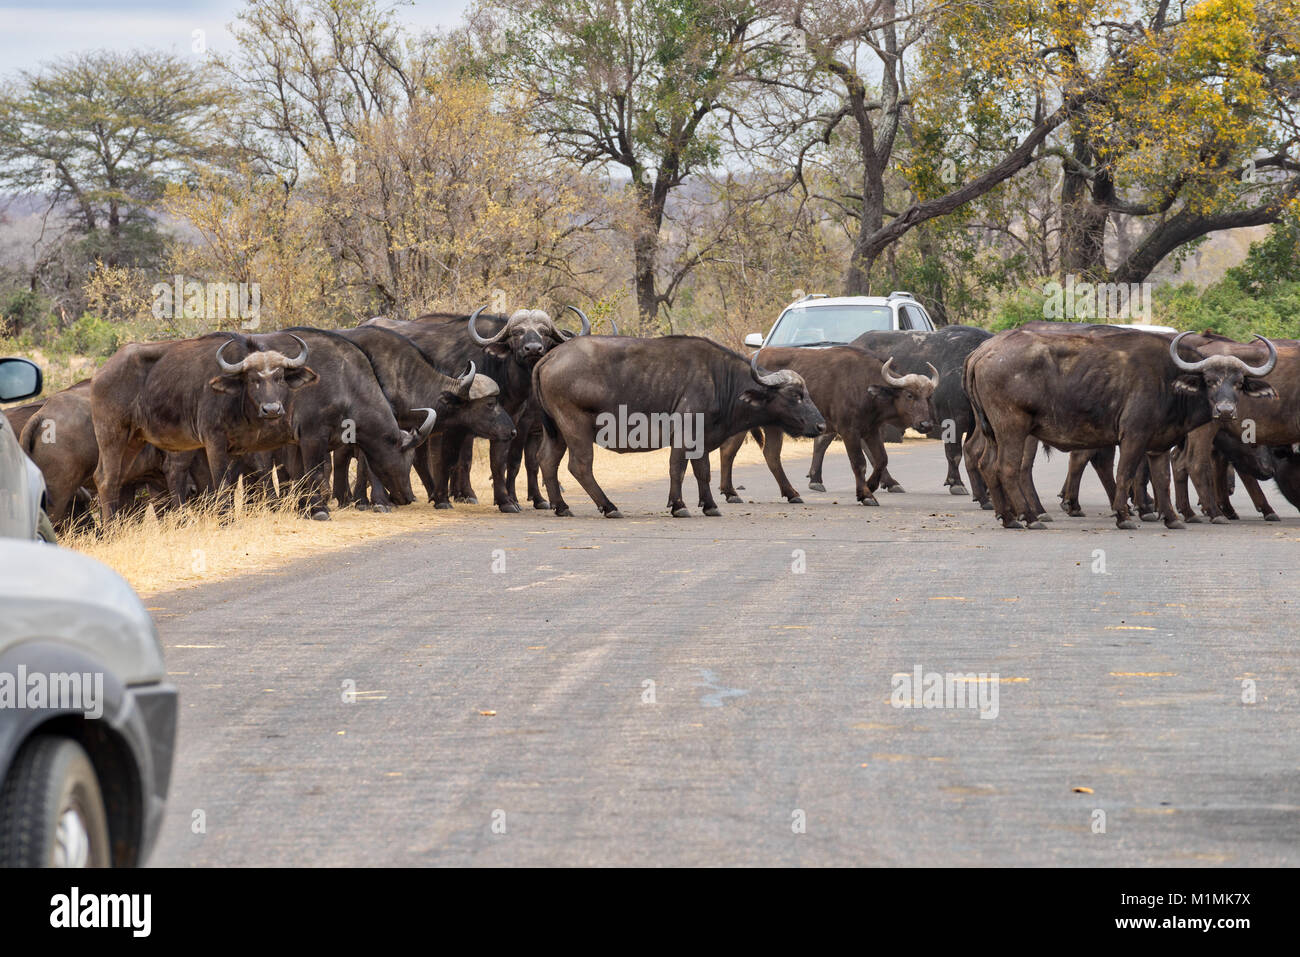 Route de passage du troupeau de bisons africains, Mpumalanga, Afrique du Sud Banque D'Images